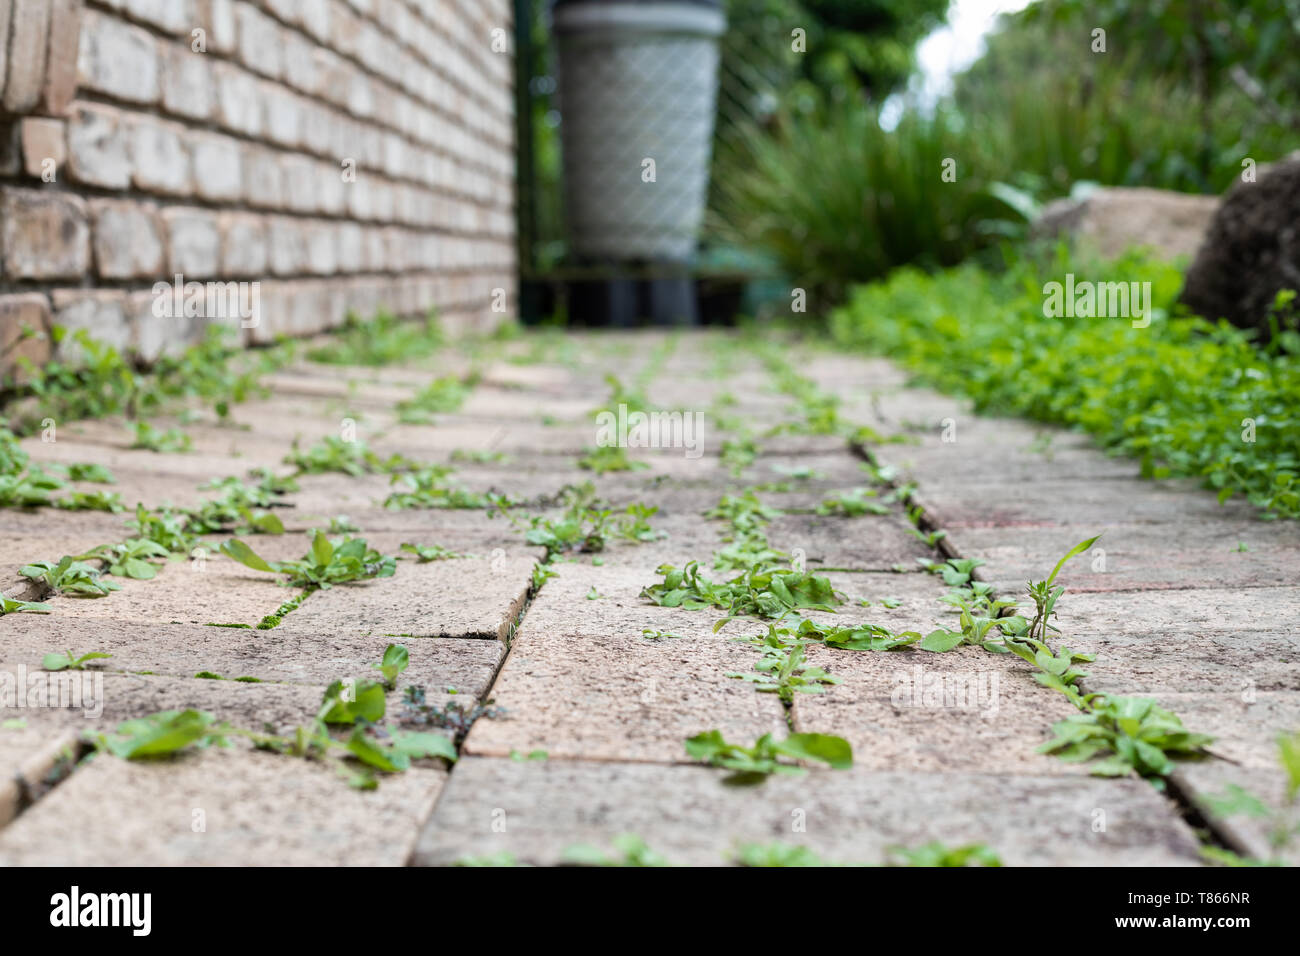 Percorso giardino ricoperta da piccole erbe infestanti in tra le fessure della pavimentazione Foto Stock